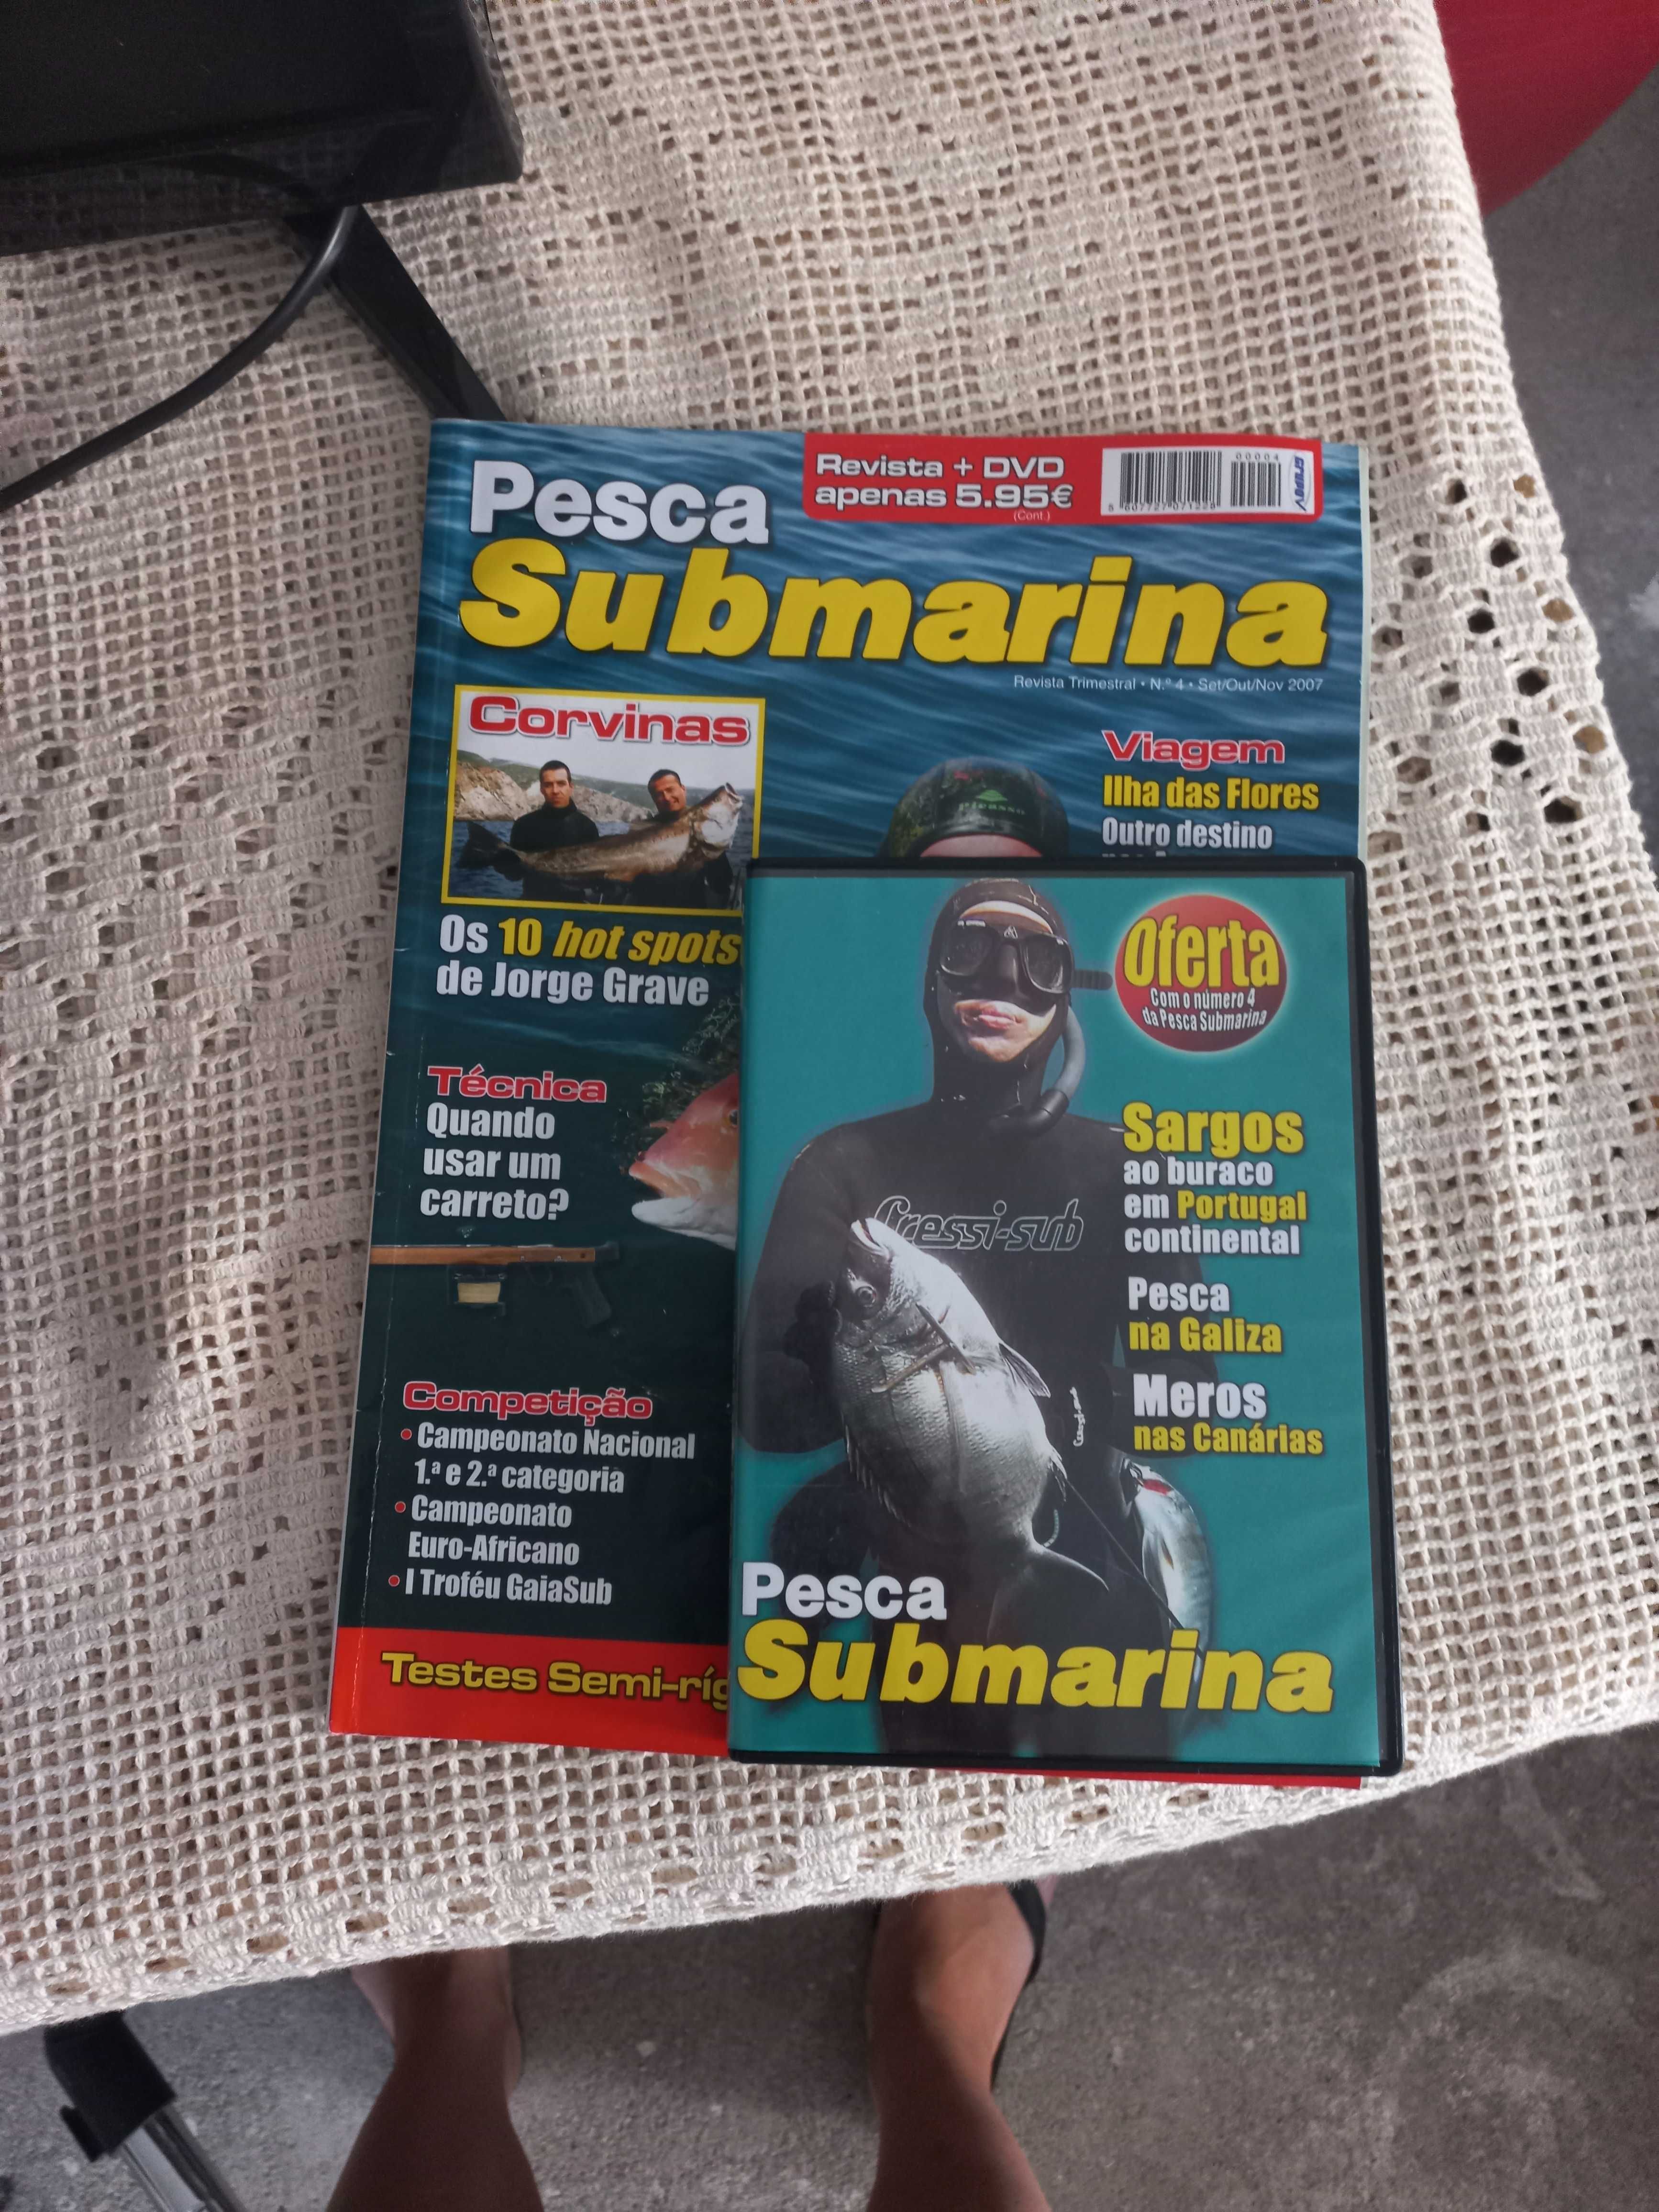 Dvds e revista pesca submarina